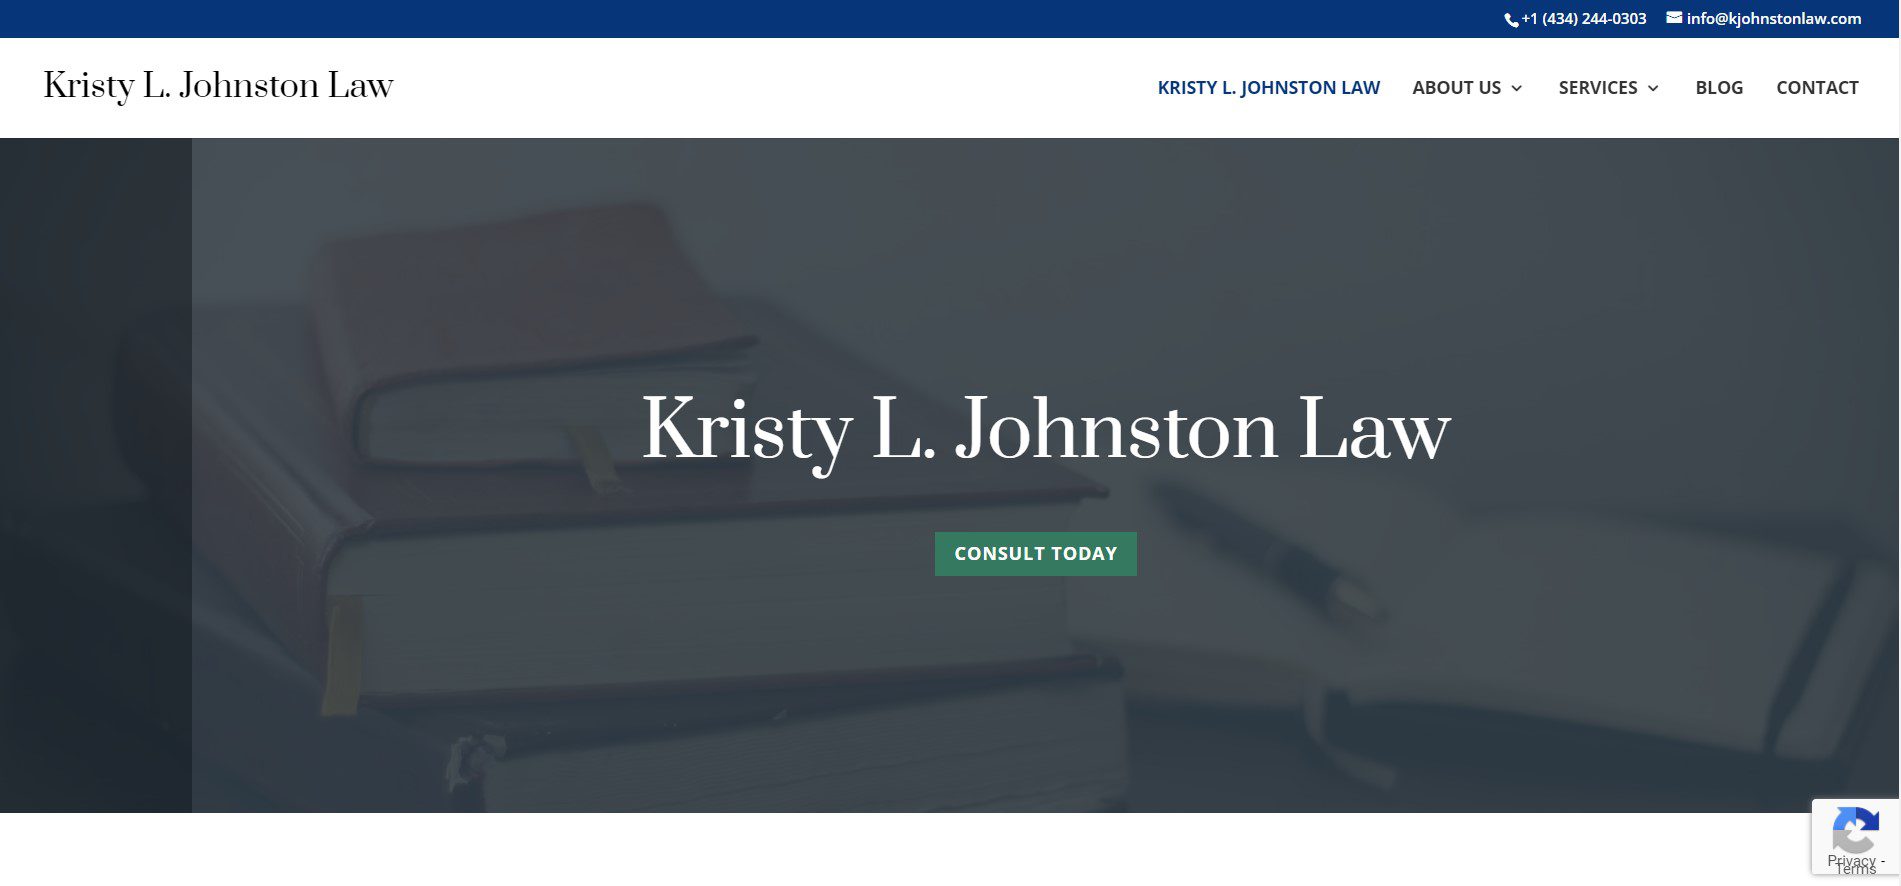 Kristy Johnston Law website